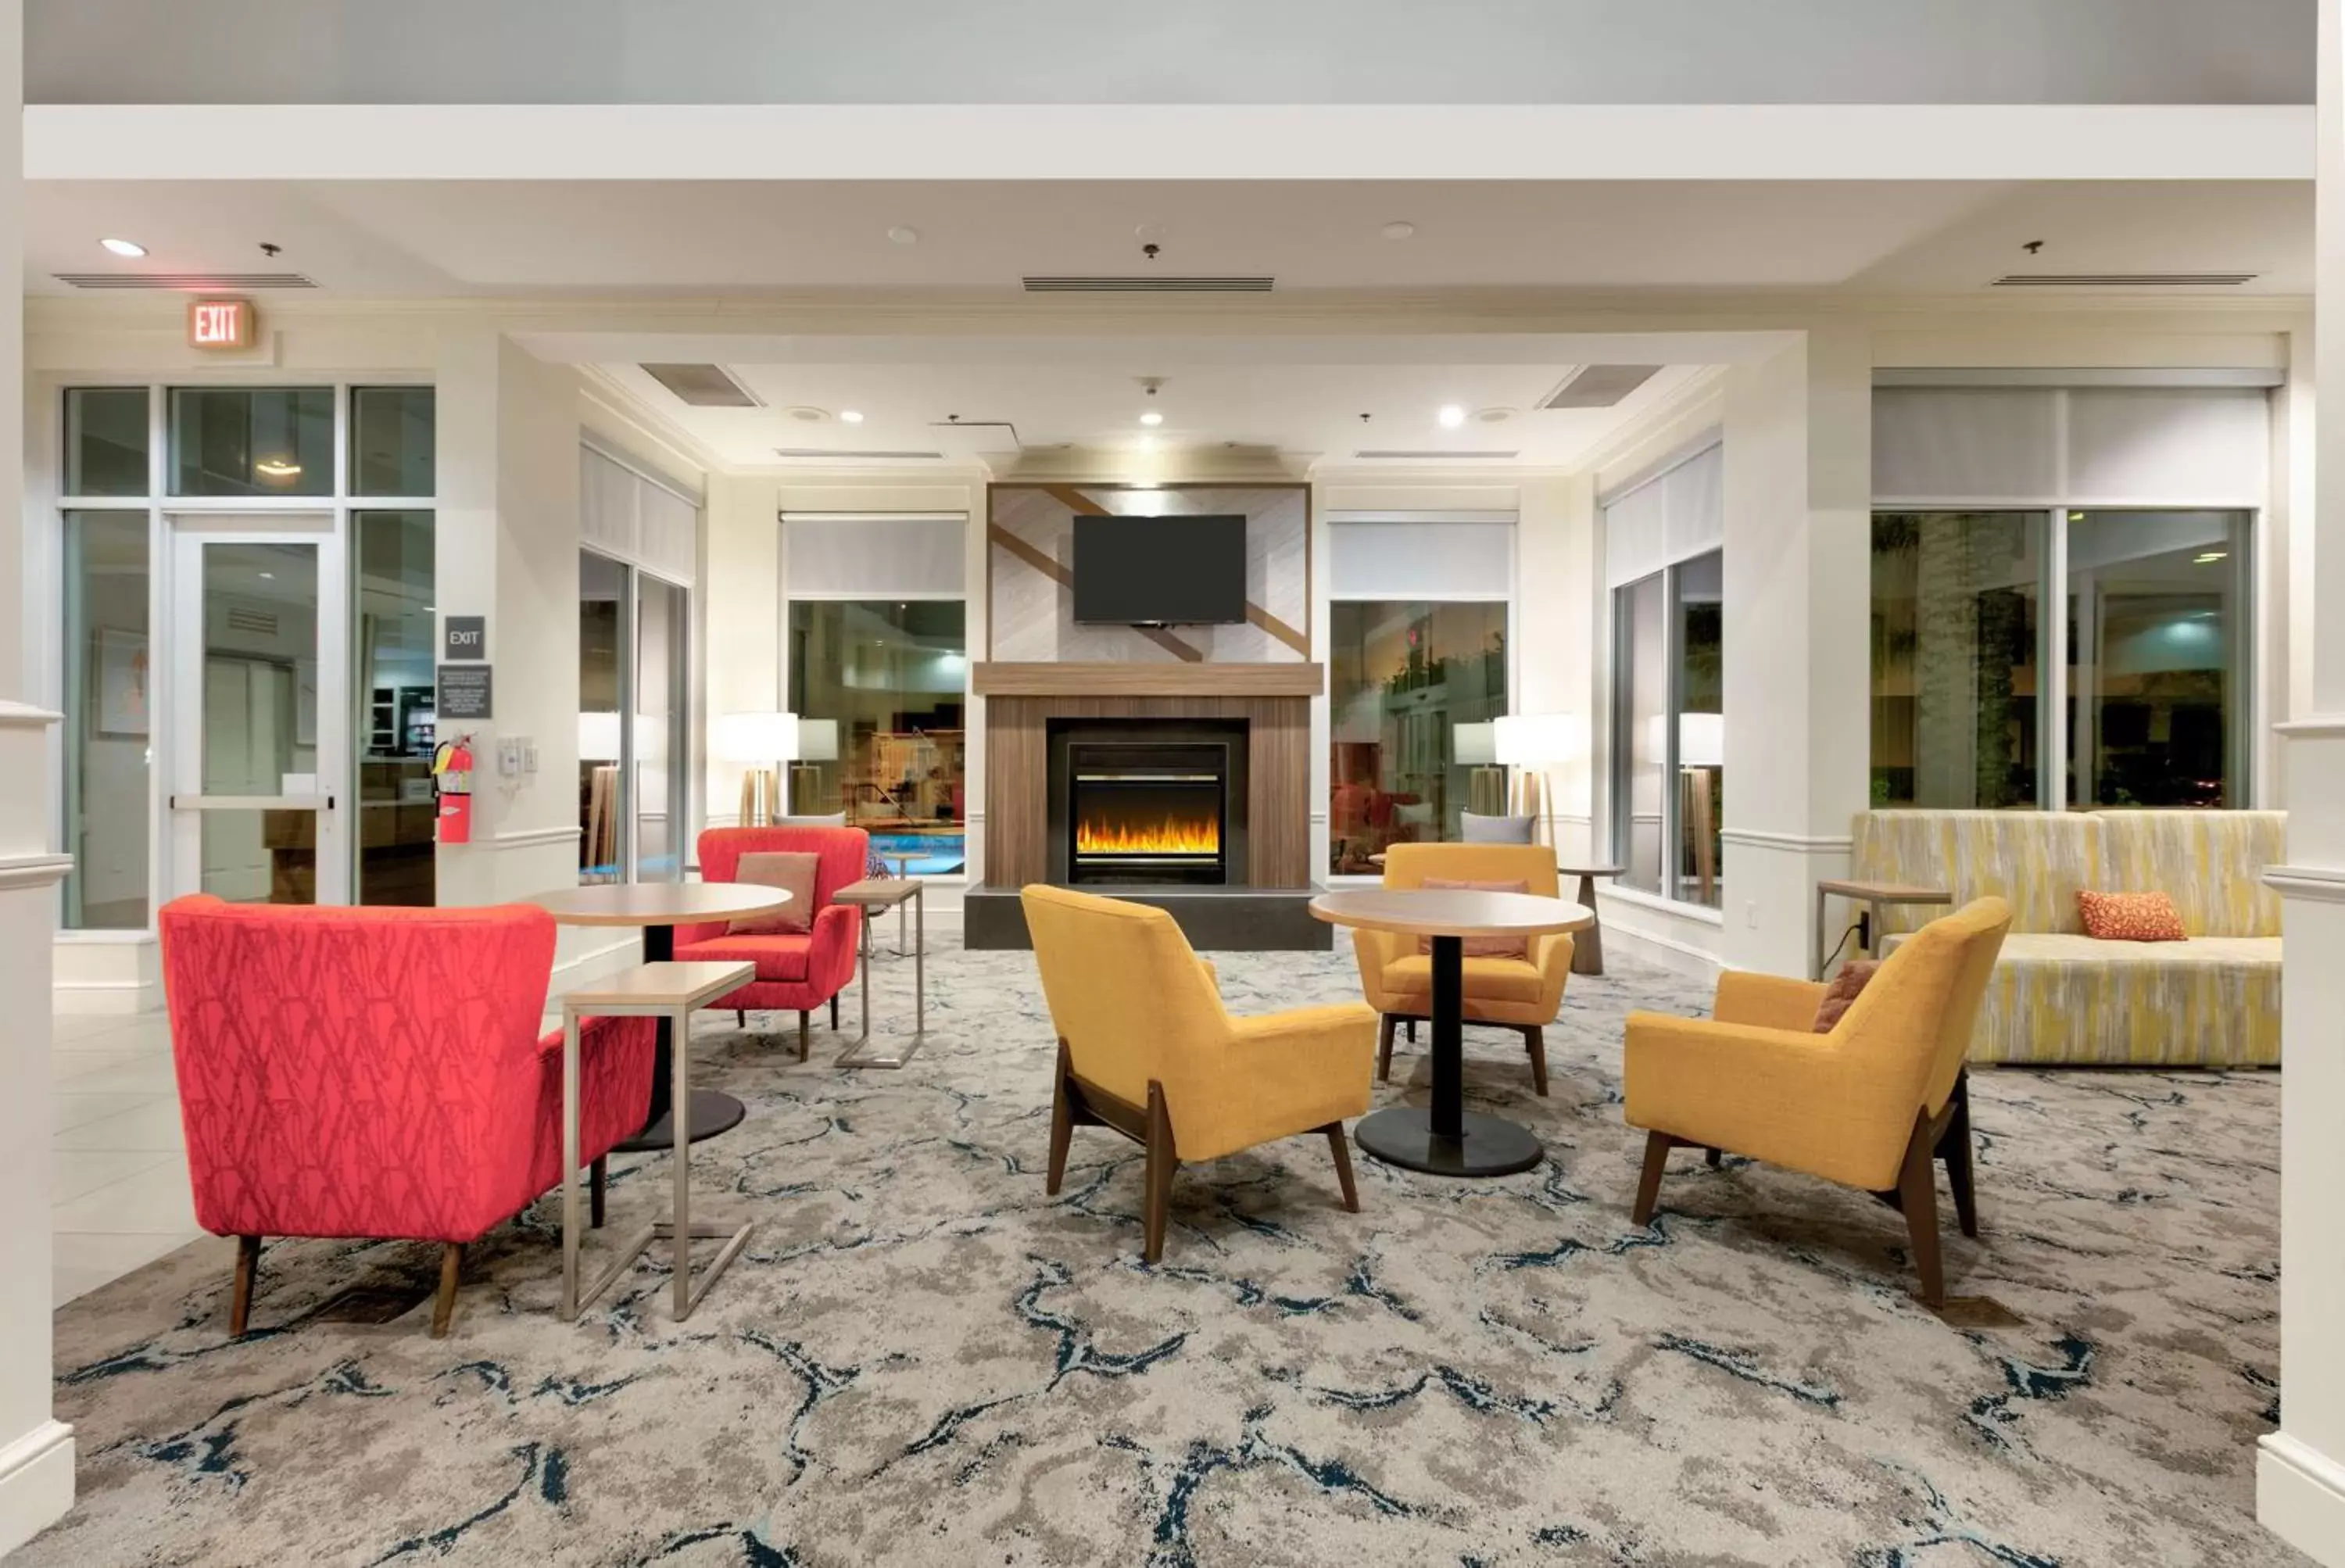 Lobby or reception in Hilton Garden Inn Irvine East/Lake Forest